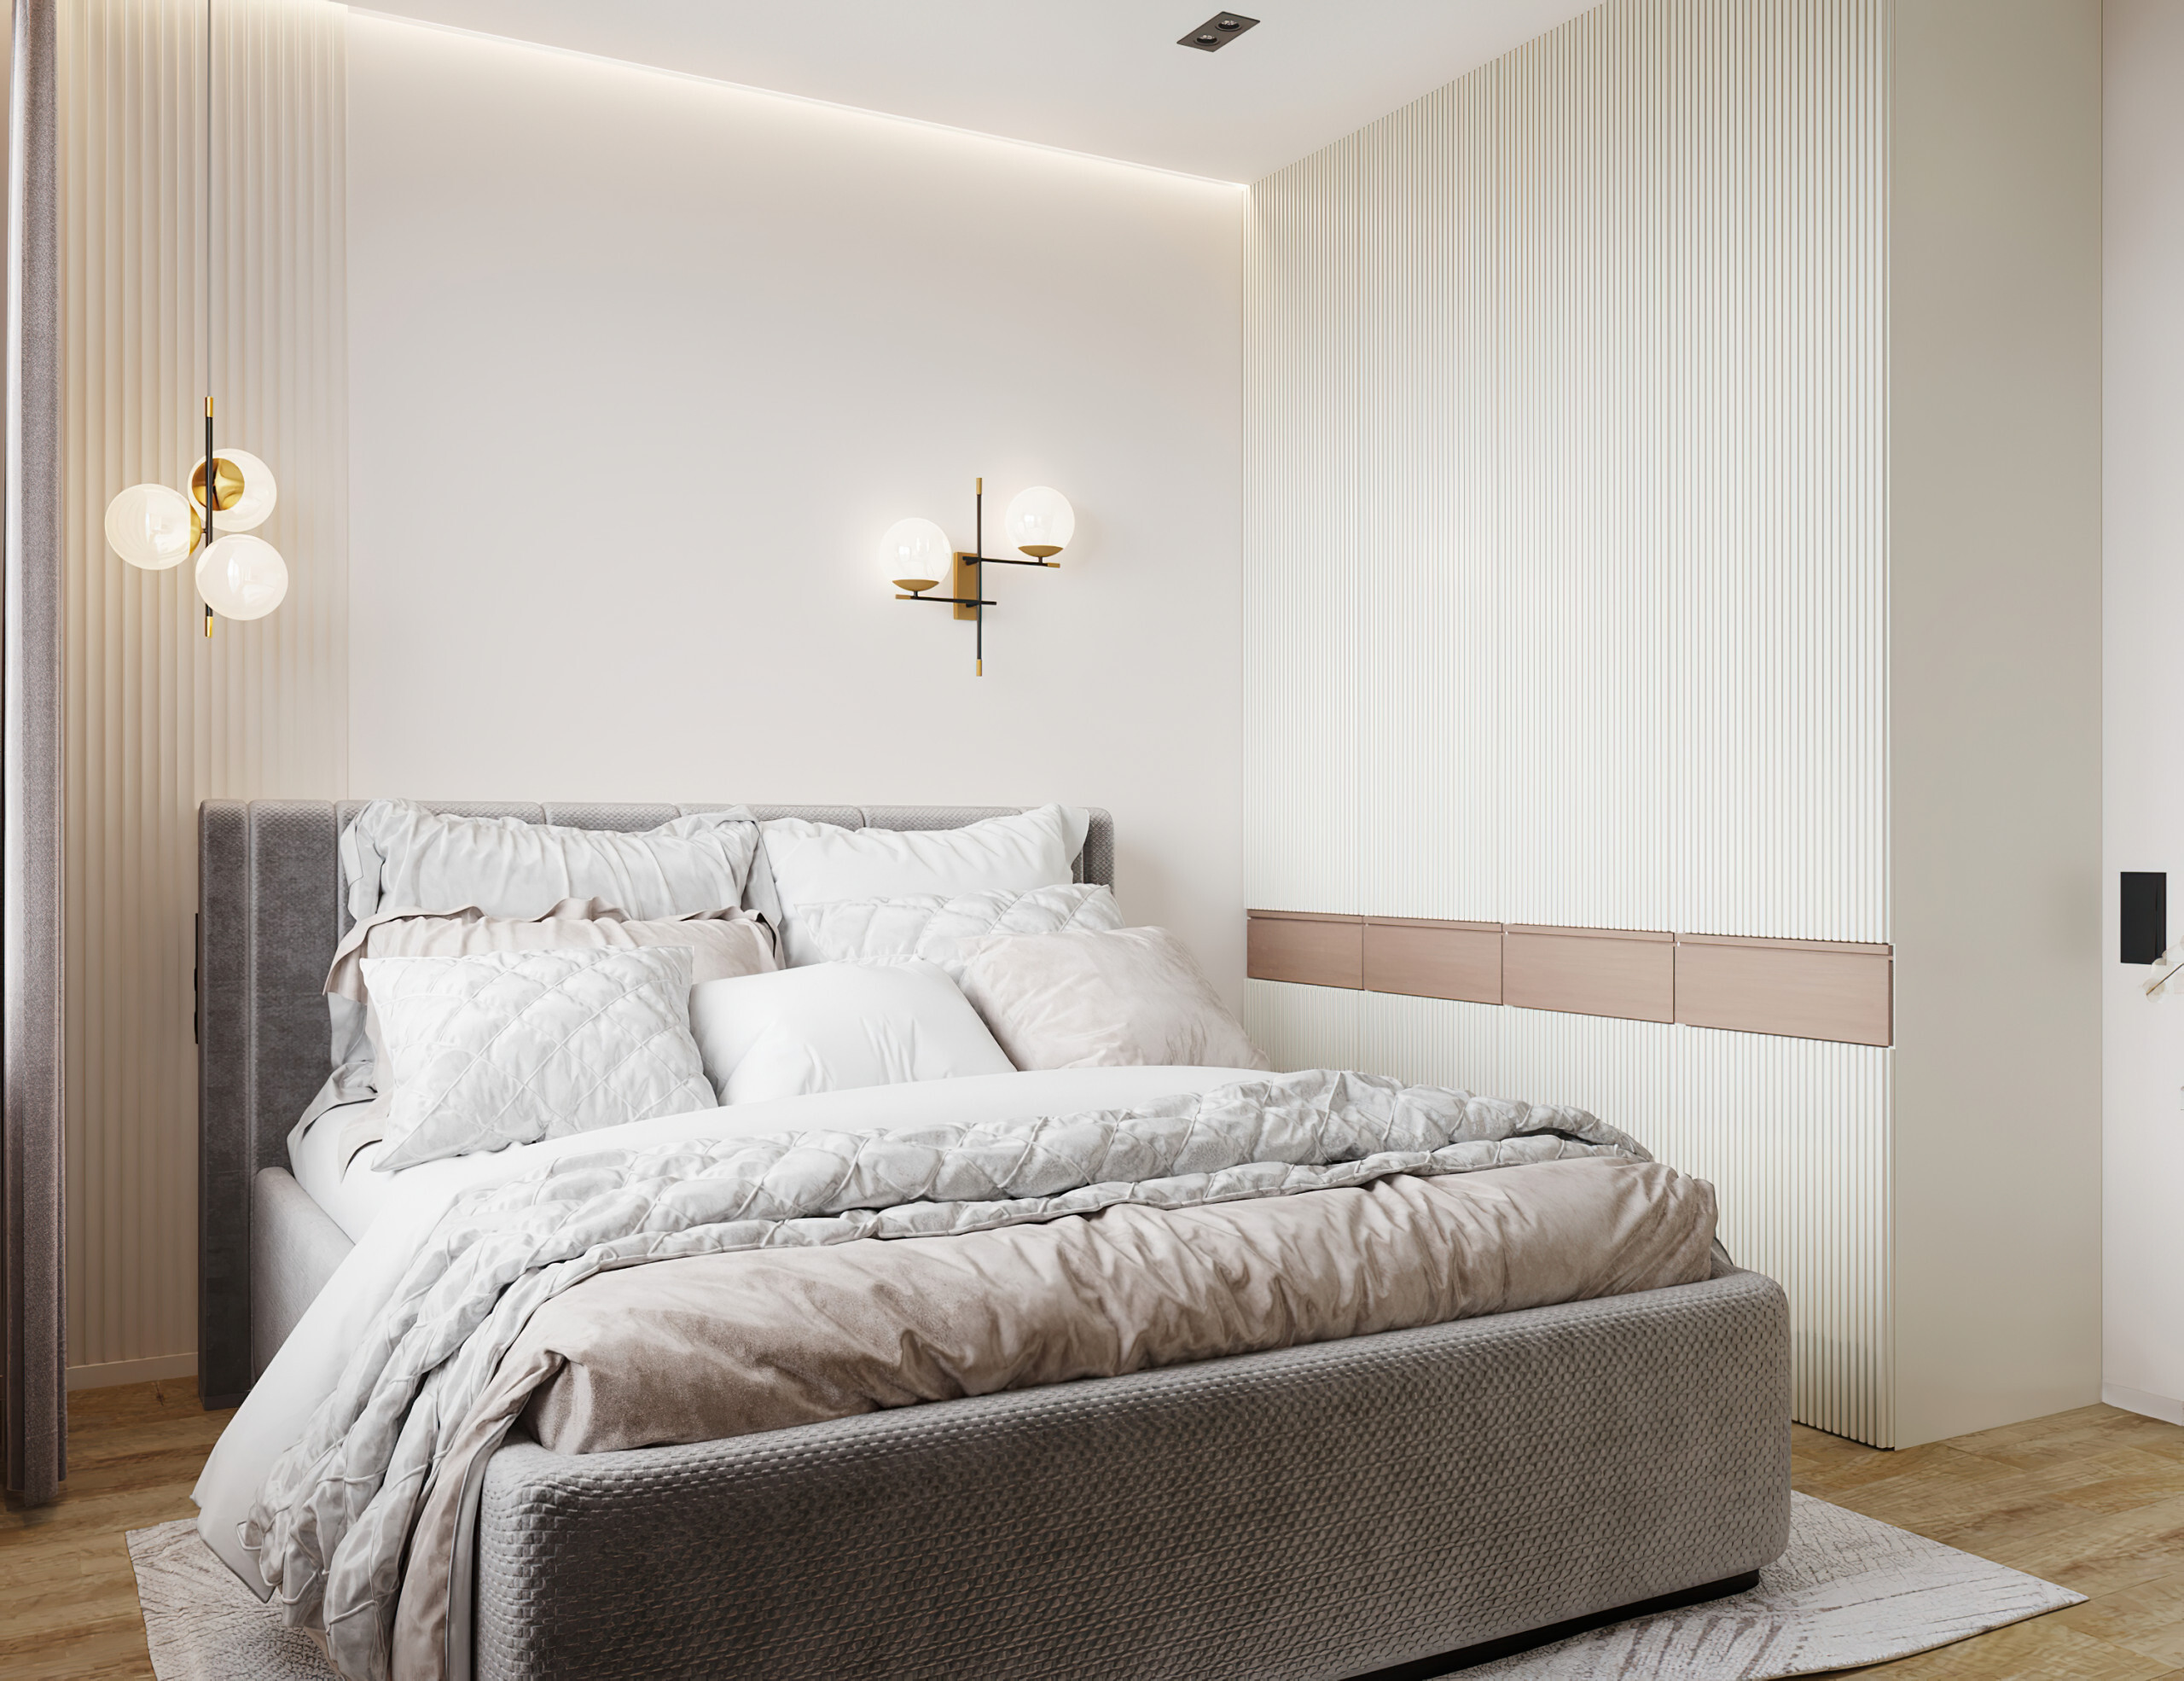 Интерьер спальни с бра над кроватью, подсветкой настенной, подсветкой светодиодной и светильниками над кроватью в современном стиле